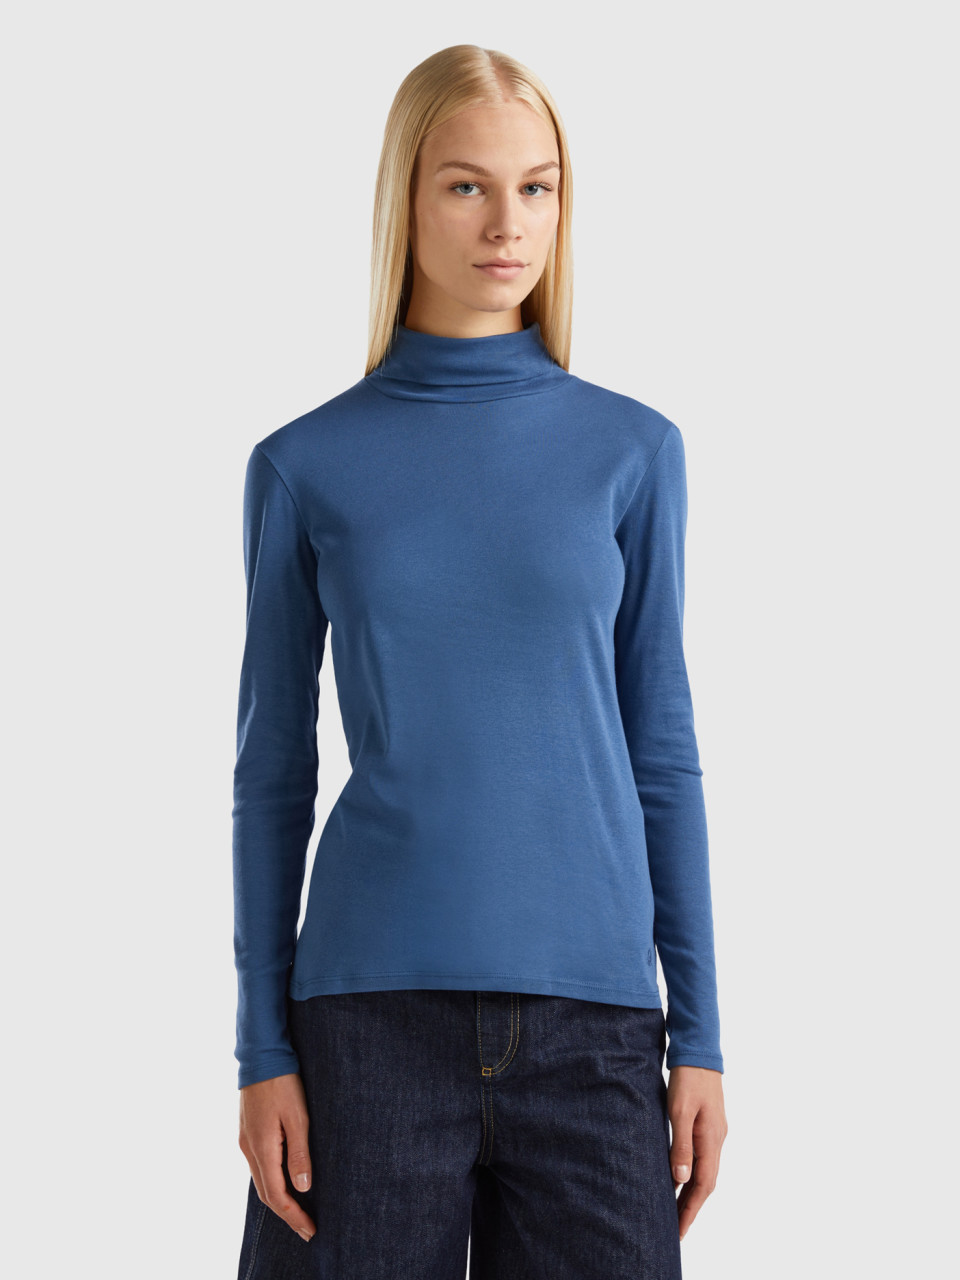 Benetton, Long Sleeve T-shirt With High Neck, Air Force Blue, Women